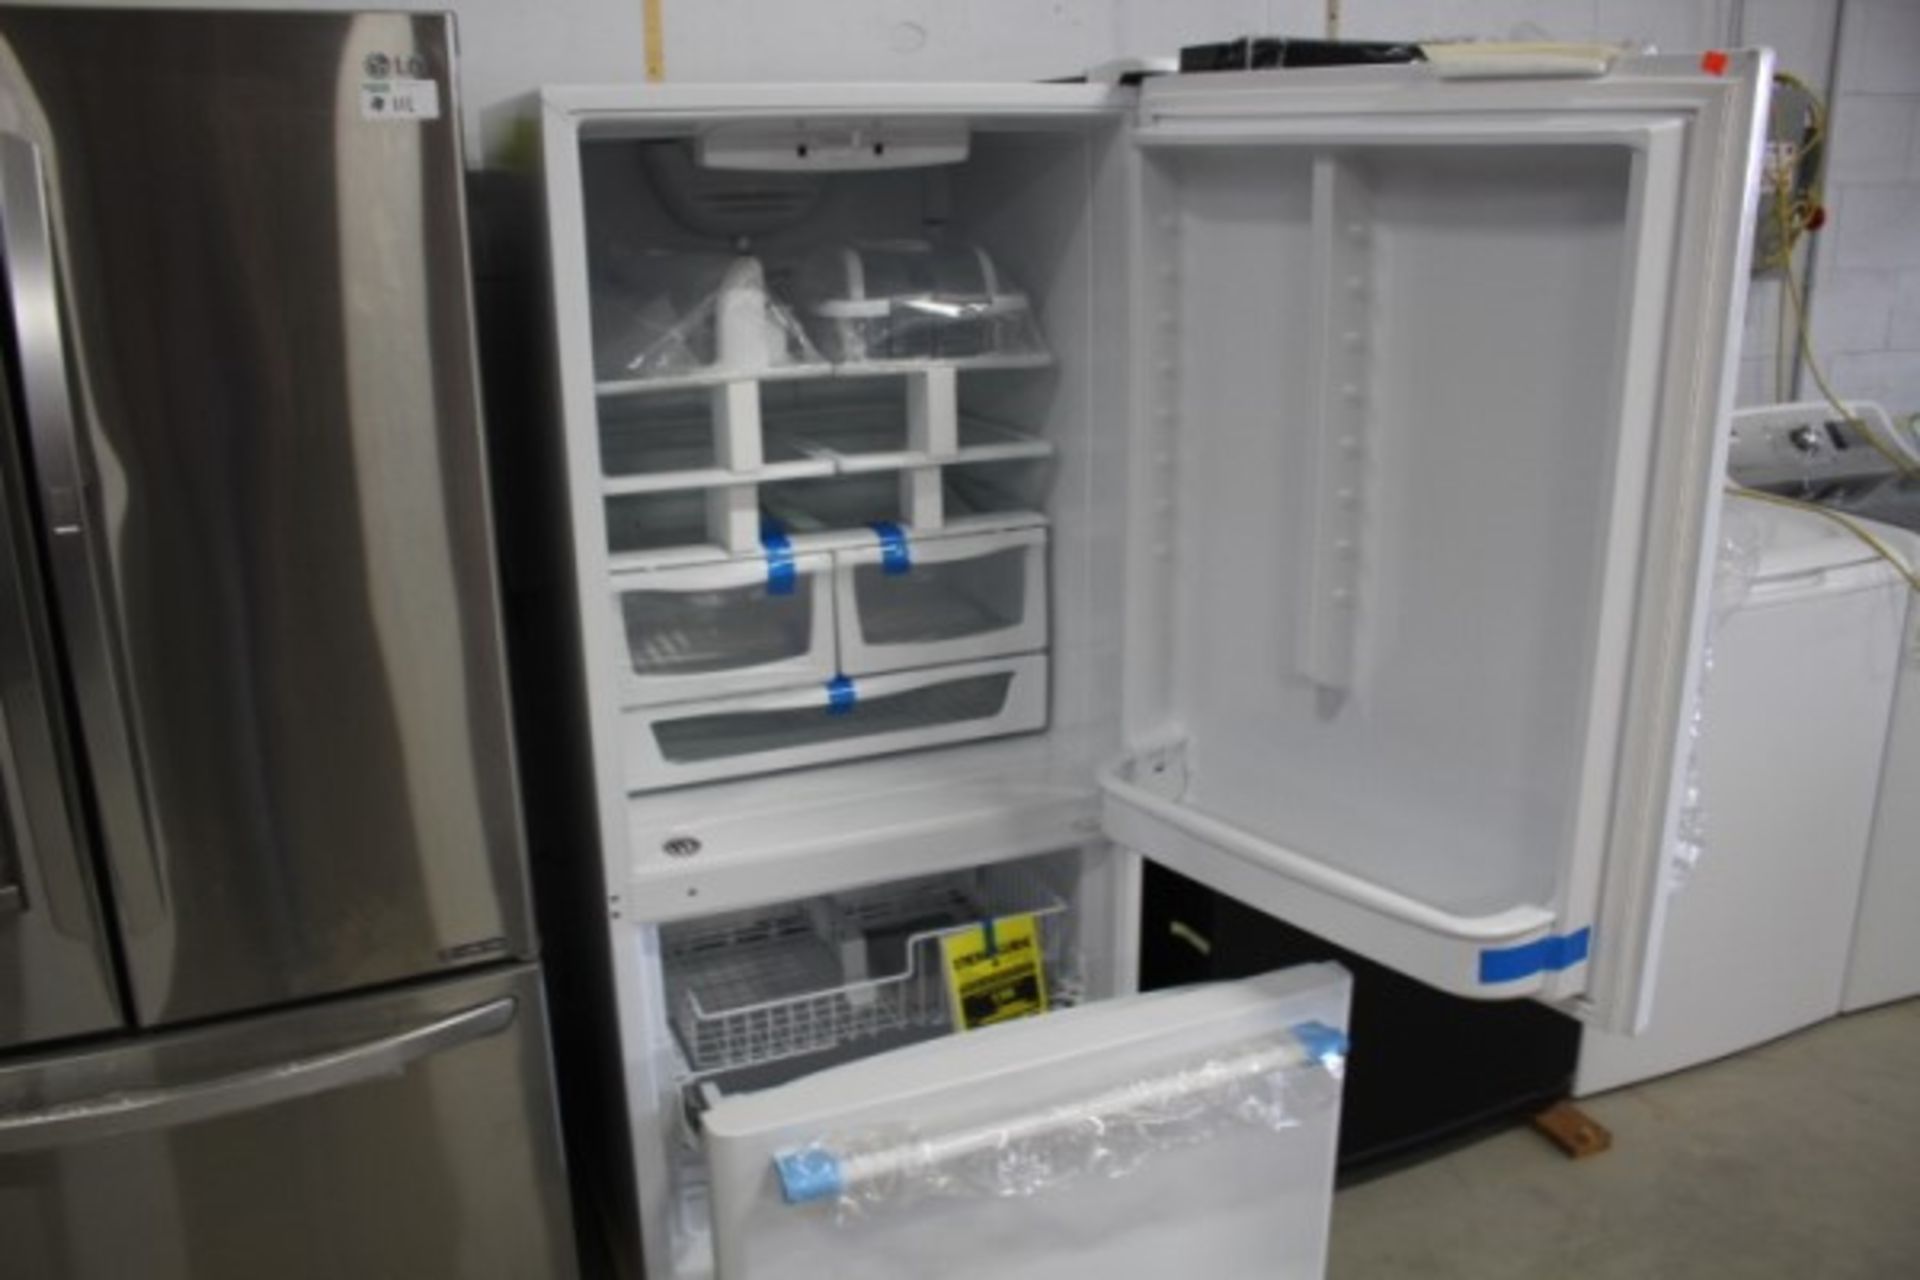 MAYTAG Fridge with Underdrawer Freezer White, 30"X30 1/2"X66" - Image 2 of 4